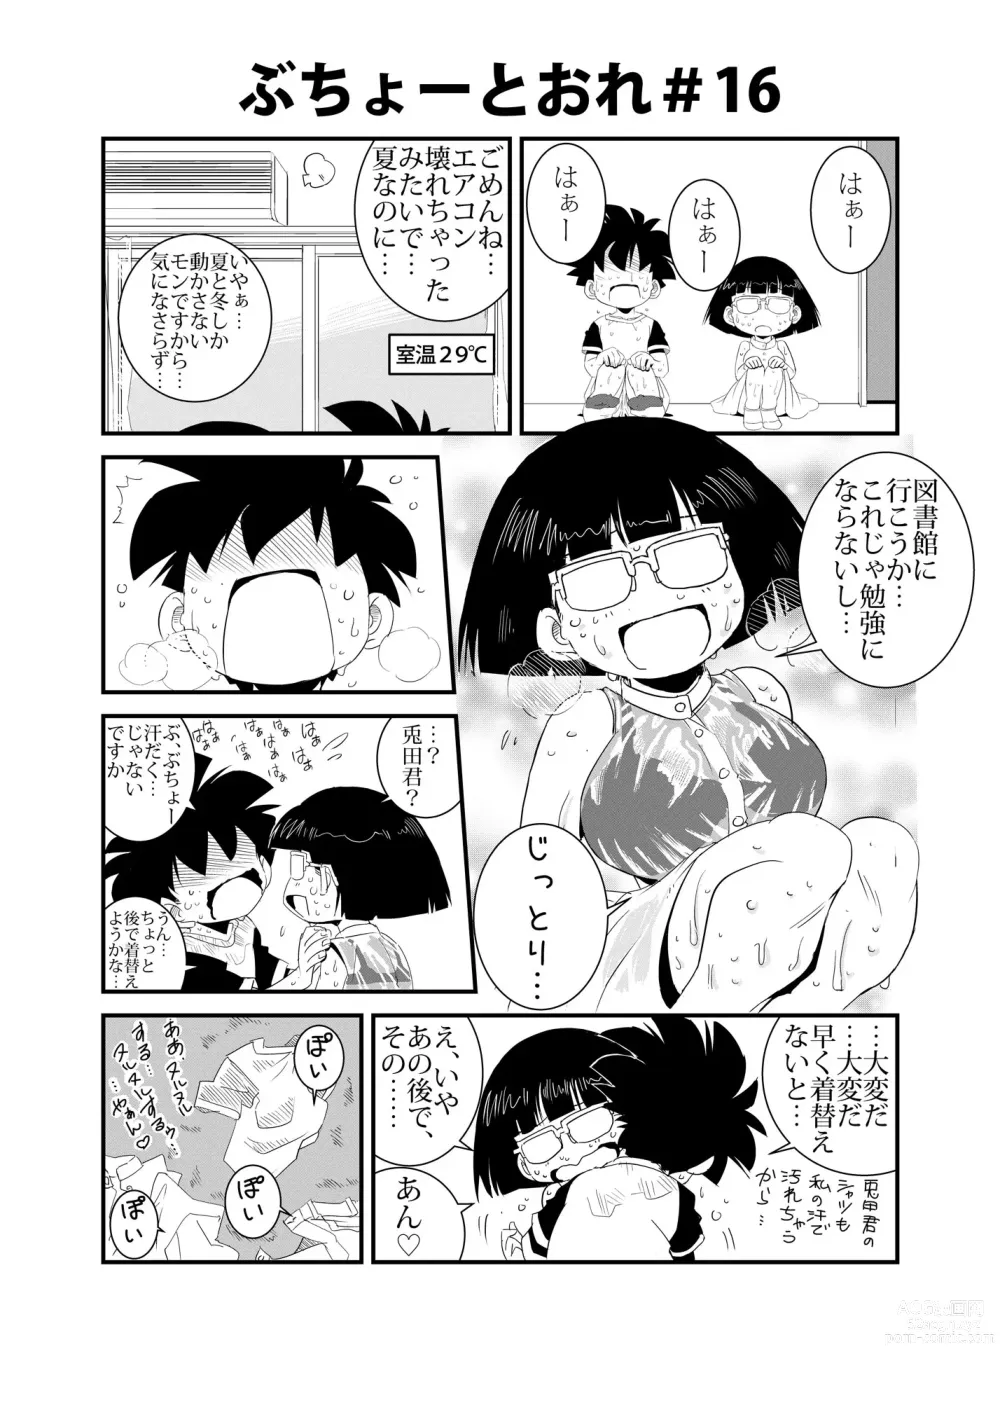 Page 16 of doujinshi Buchou to Ore